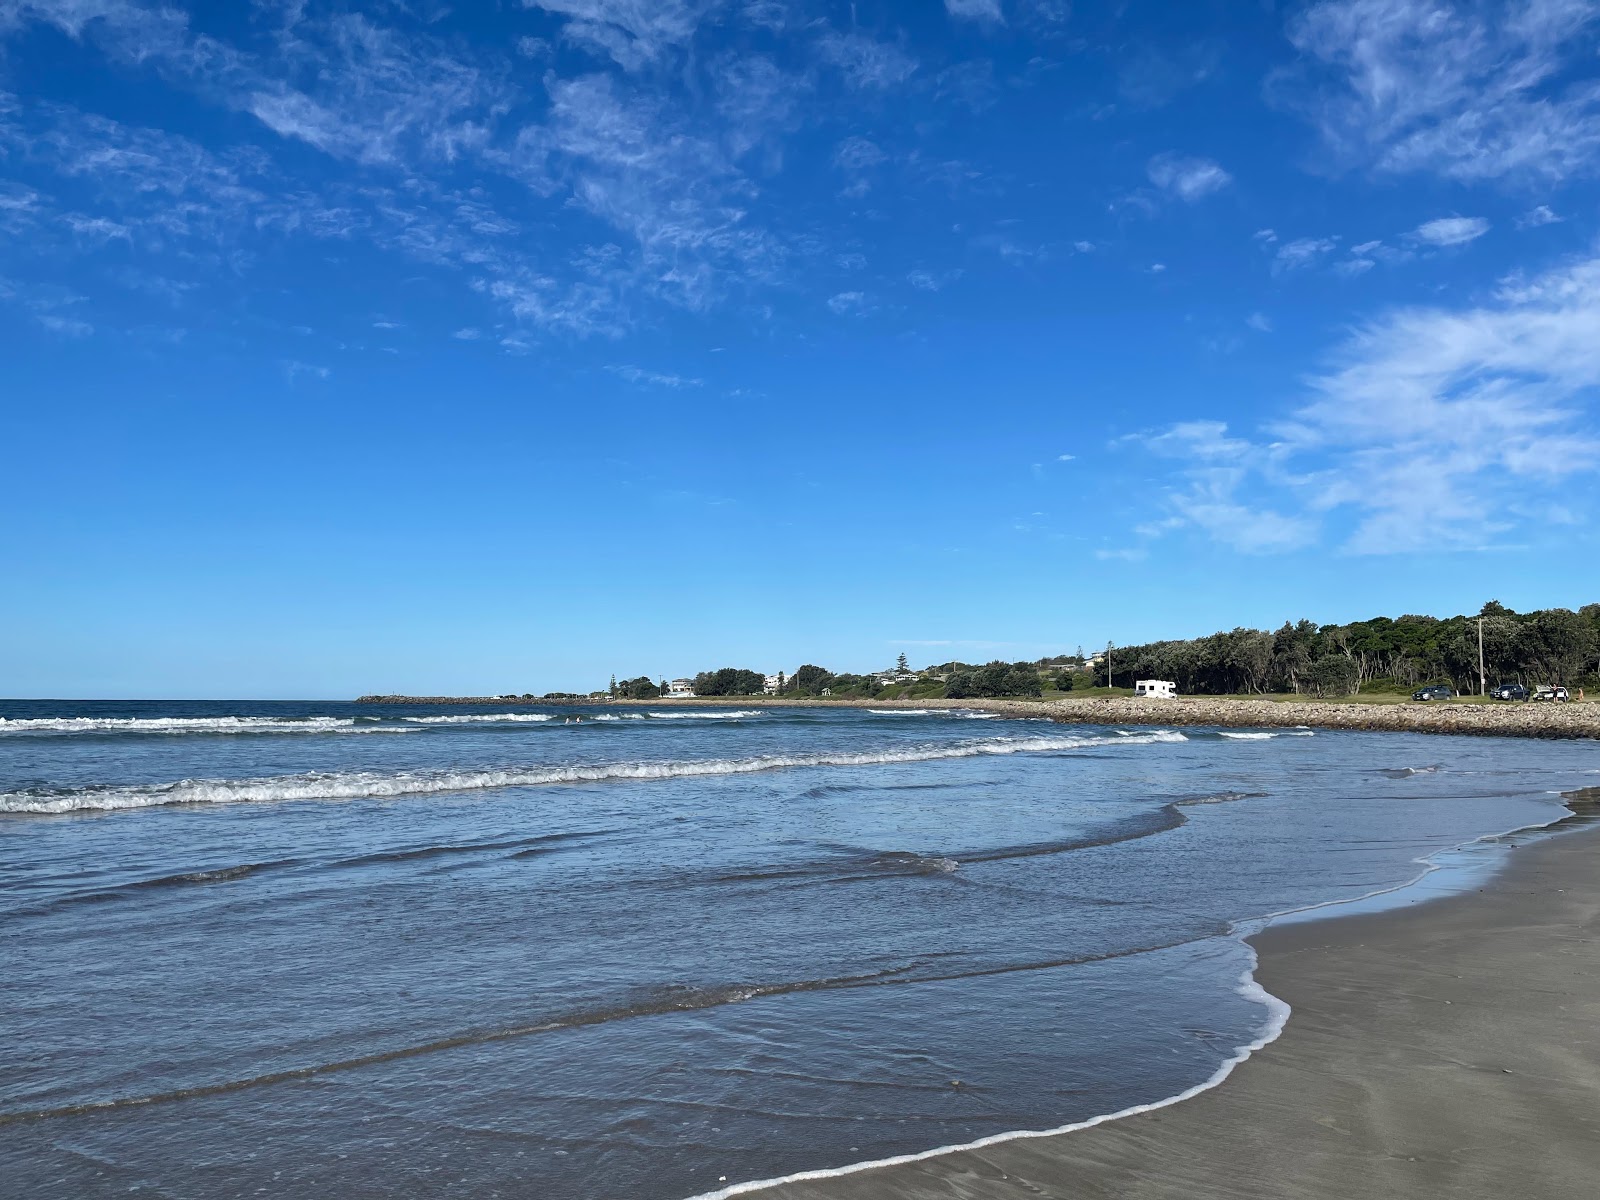 Foto af Crowdy Bay Beach - populært sted blandt afslapningskendere